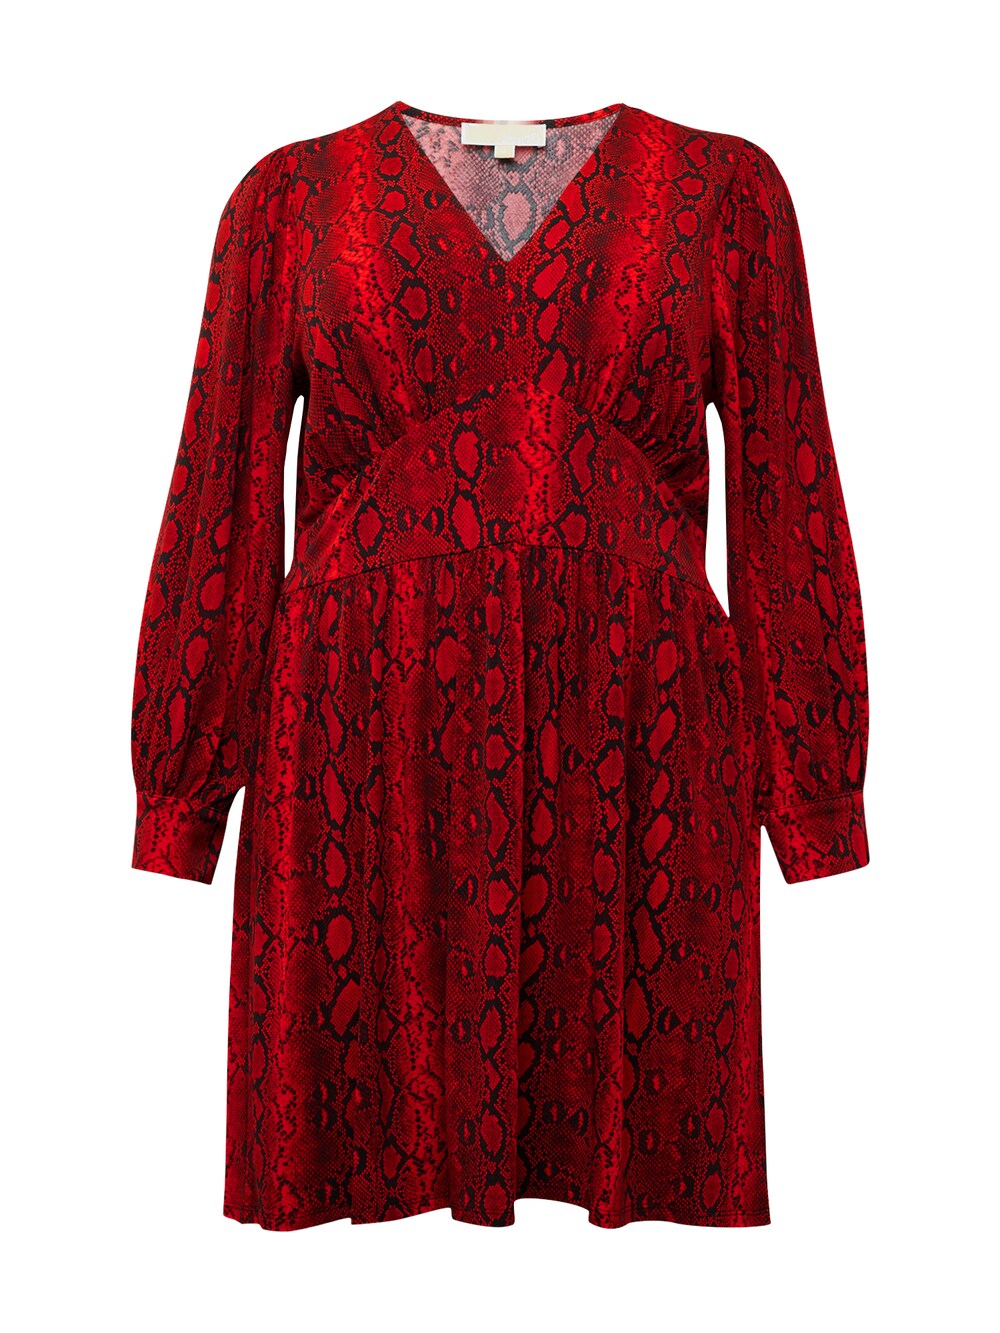 Платье Michael Kors, красный/малиновый/светло-красный